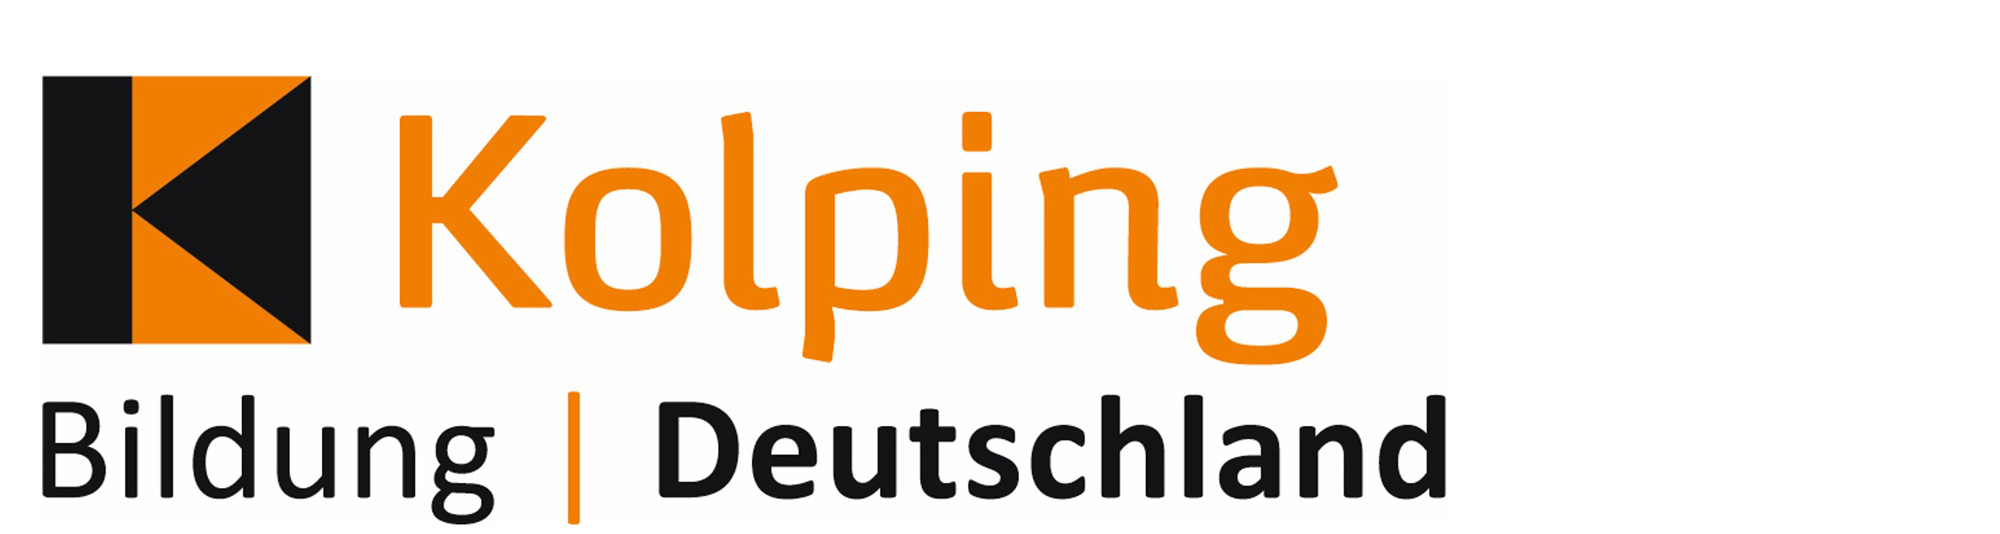 Kolping Bildung Deutschland gGmbH - Pflegeschule Dortmund